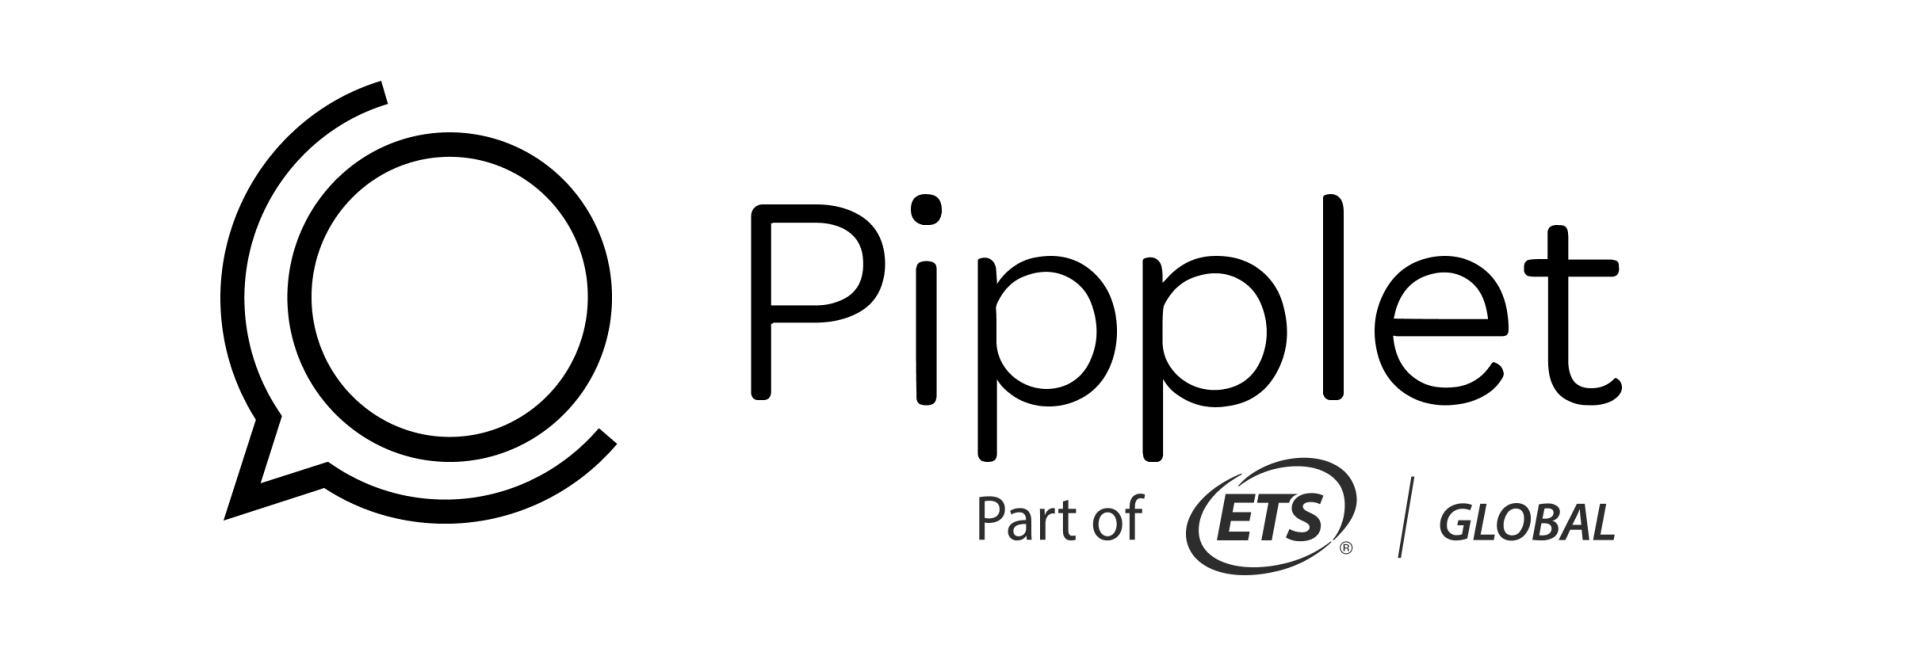 Examen Pipplet flex